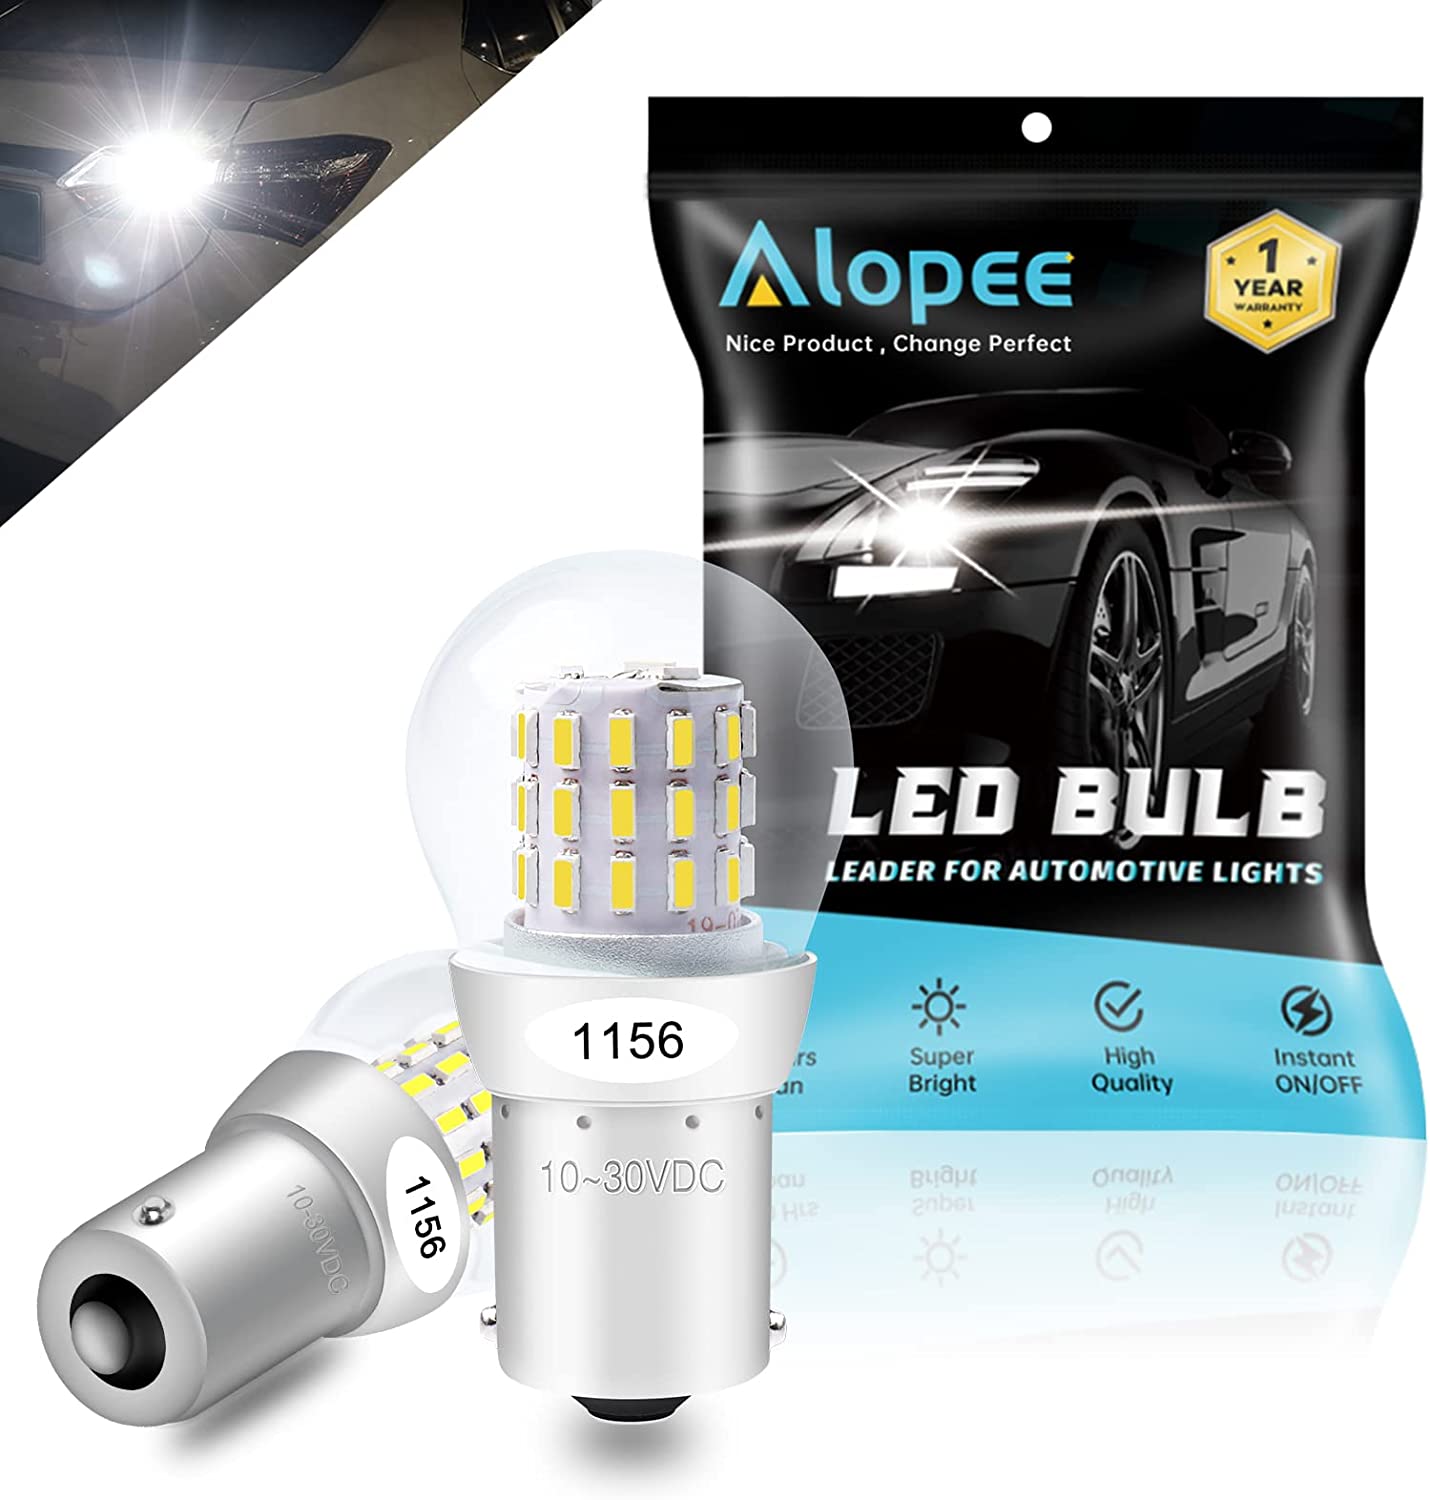 ALOPEE-9V-30V DC 1156 LED Bulb White Super Bright 1156 Bulb Replacemen –  Alopee Online Store